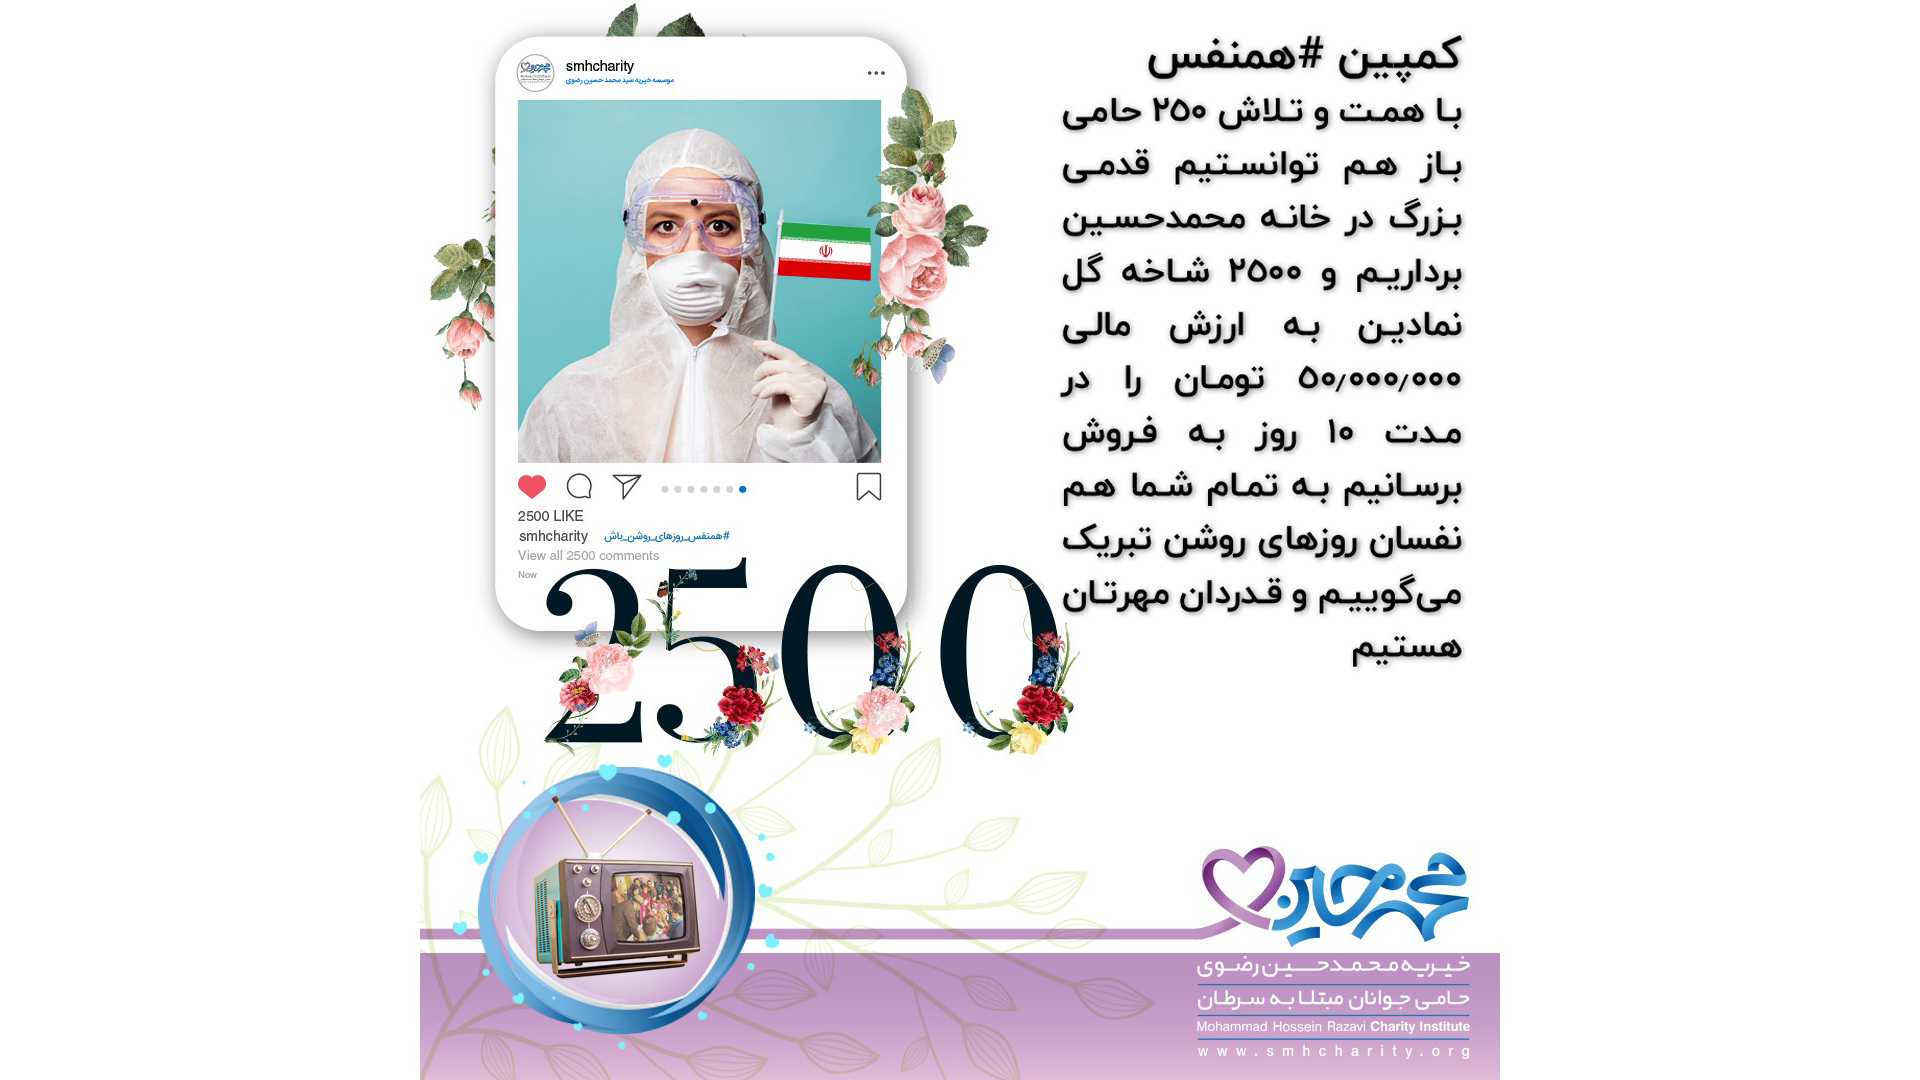 پزشکان|پرستاران|ویروس کرونا|مبارزه با کرونا|موسسه خیریه سید محمد حسین رضوی